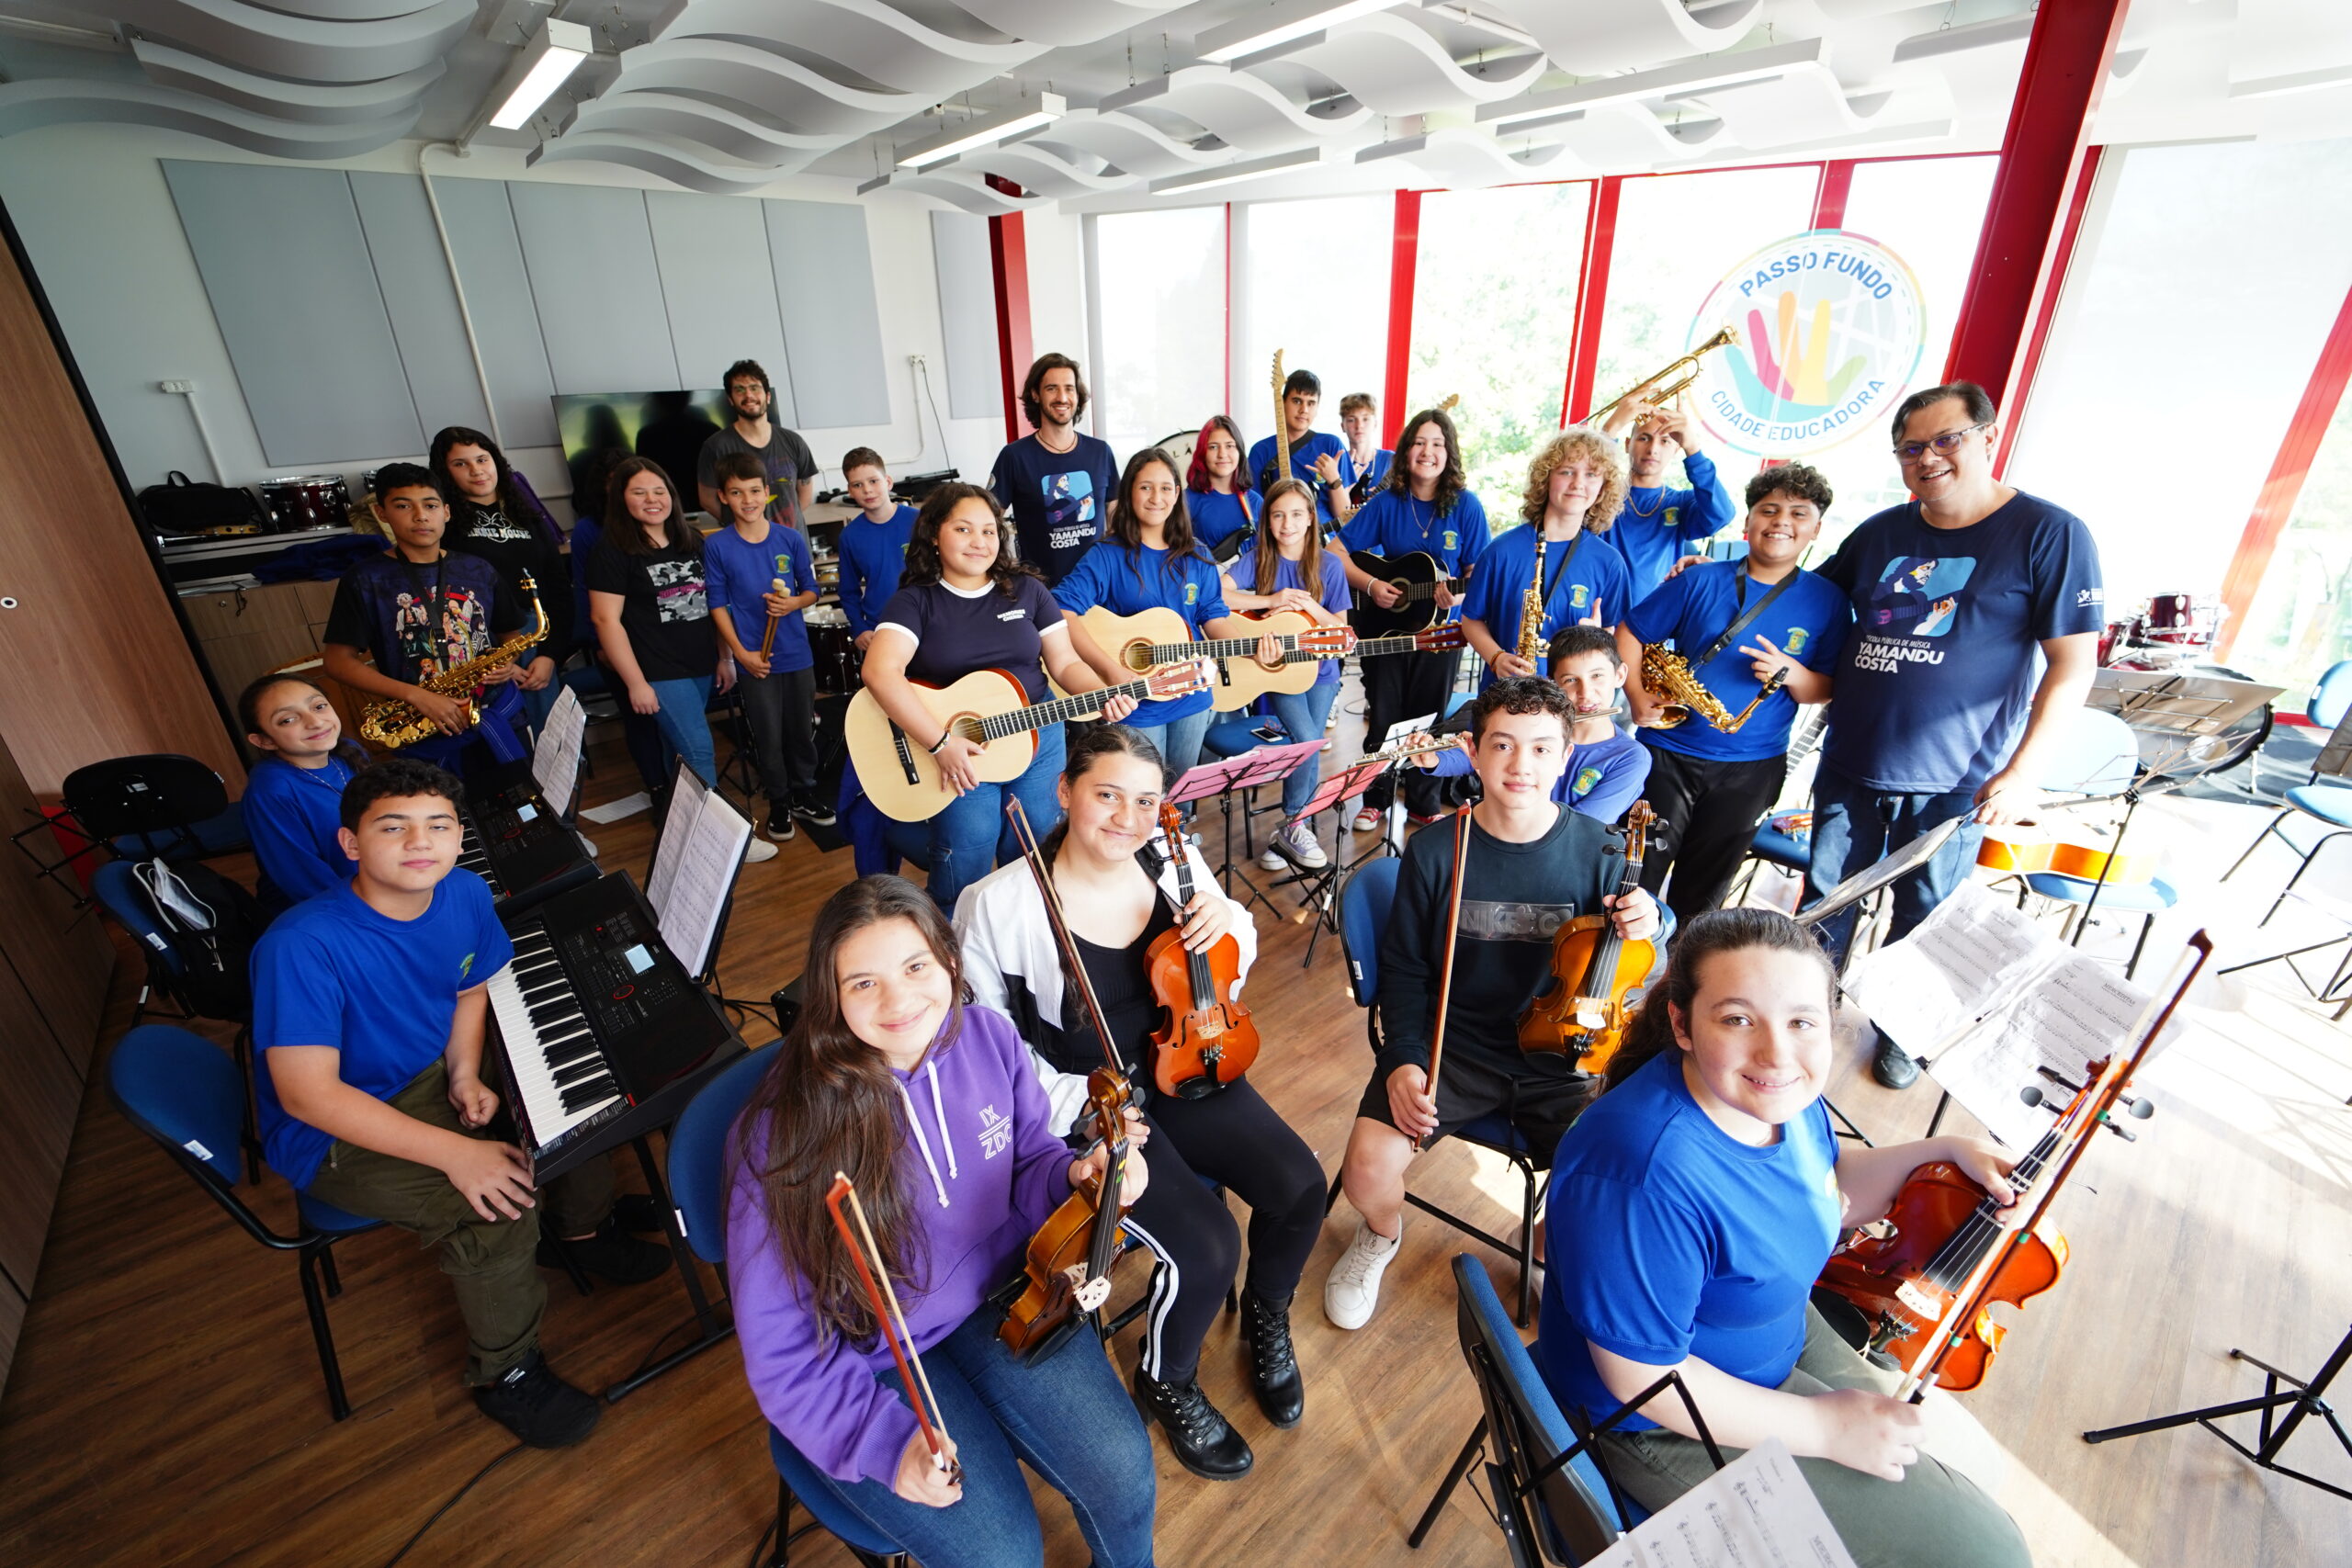 Escola Pública de Música Yamandu Costa abrirá o show do violonista Lúcio Yanel e Grupo Yangos